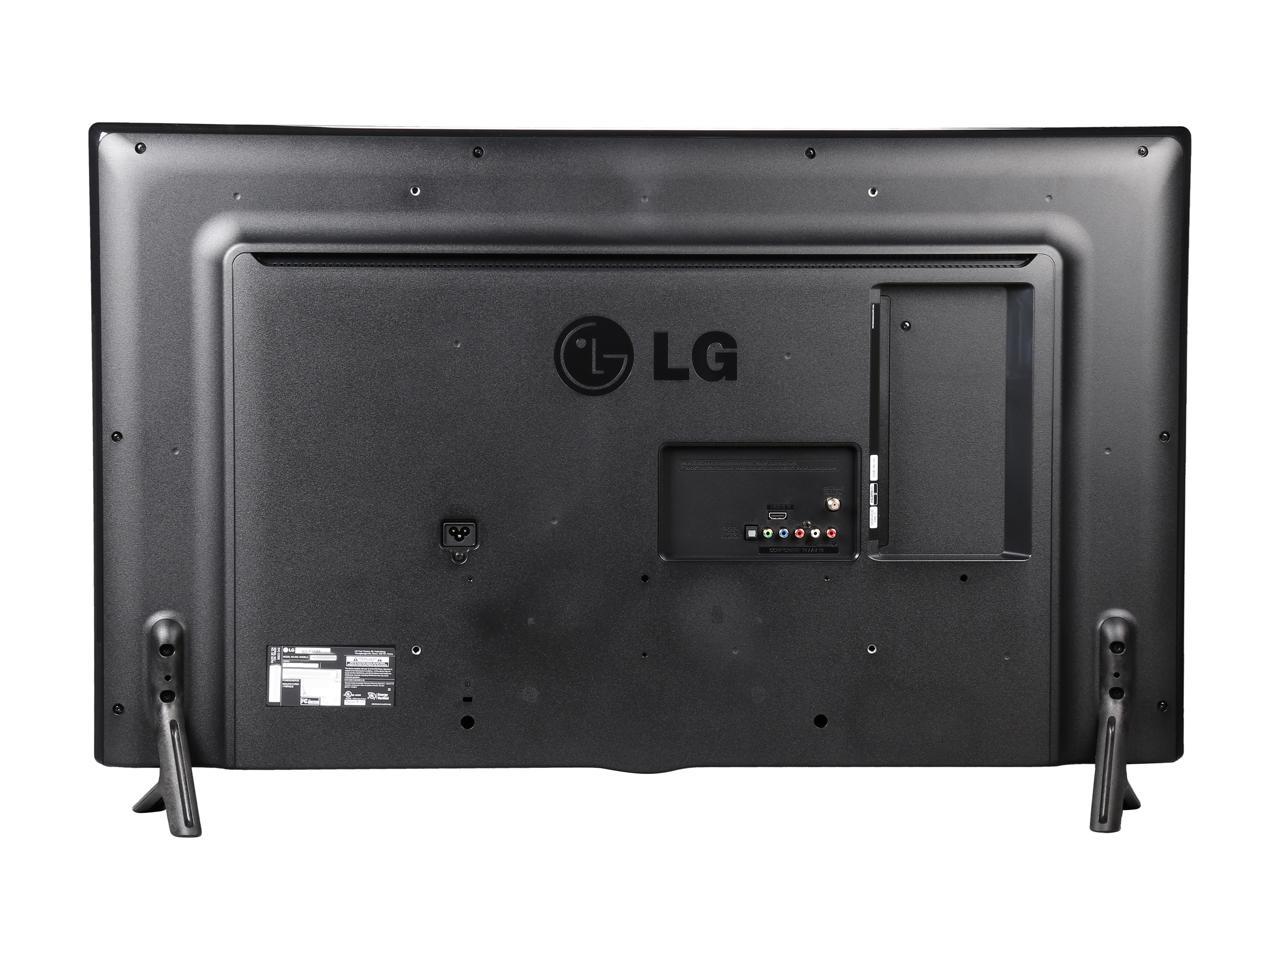 Lg Electronics 42lf5600 42 Inch 1080p Led Tv 2015 Model Newegg Com